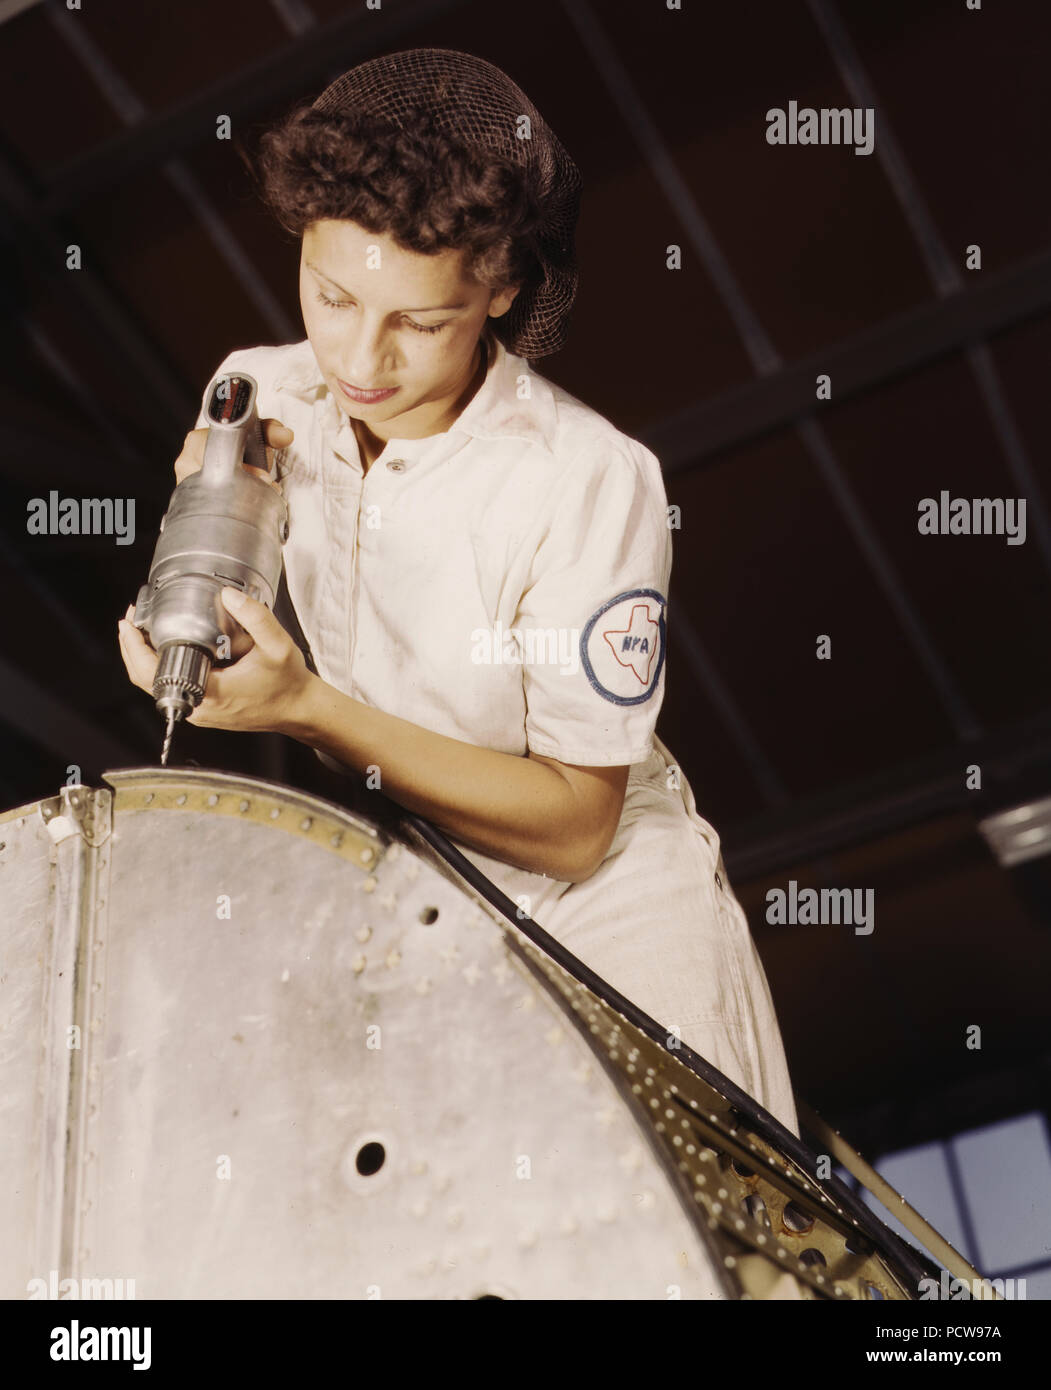 Eine Niete ist ihr Kampf Waffe. Diese weibliche Arbeitnehmer, Tochter eines Marineleutnant, eine von vielen Frauen, die NYA Schulung Mechanik an der Naval Air Base, Corpus Christi, Texas zu werden. August 1942 (Rosie der Nieterin Konzept) Stockfoto